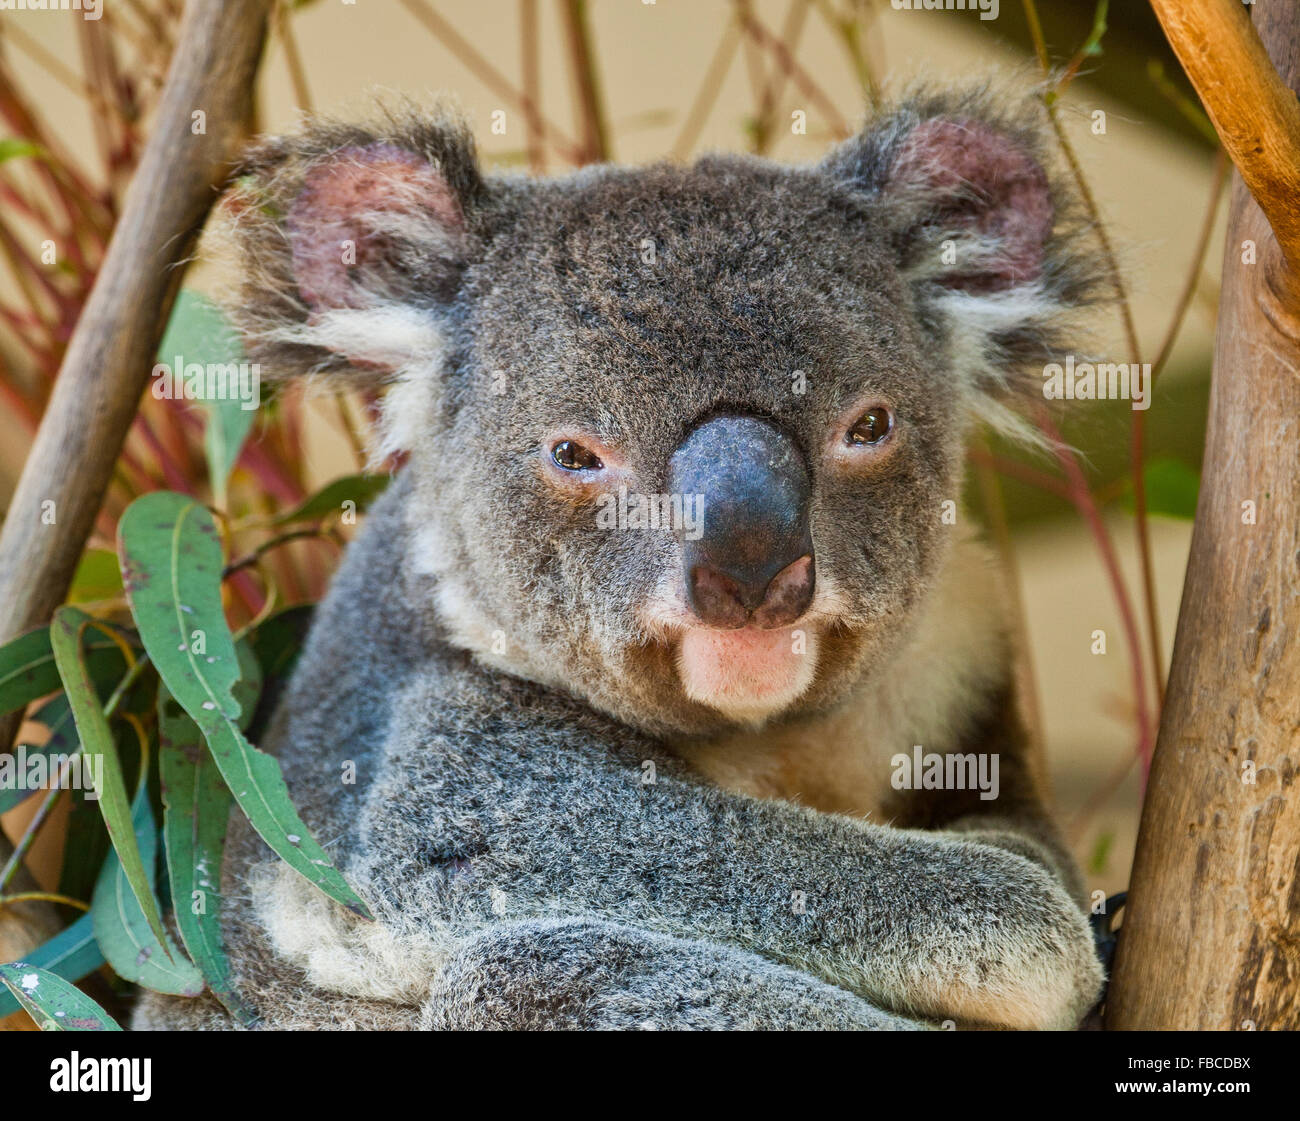 Australien, Koala, Phascolarctos Cenereus, gutgewachsene arboreal Beuteltiere Pflanzenfresser in Australien heimisch Stockfoto